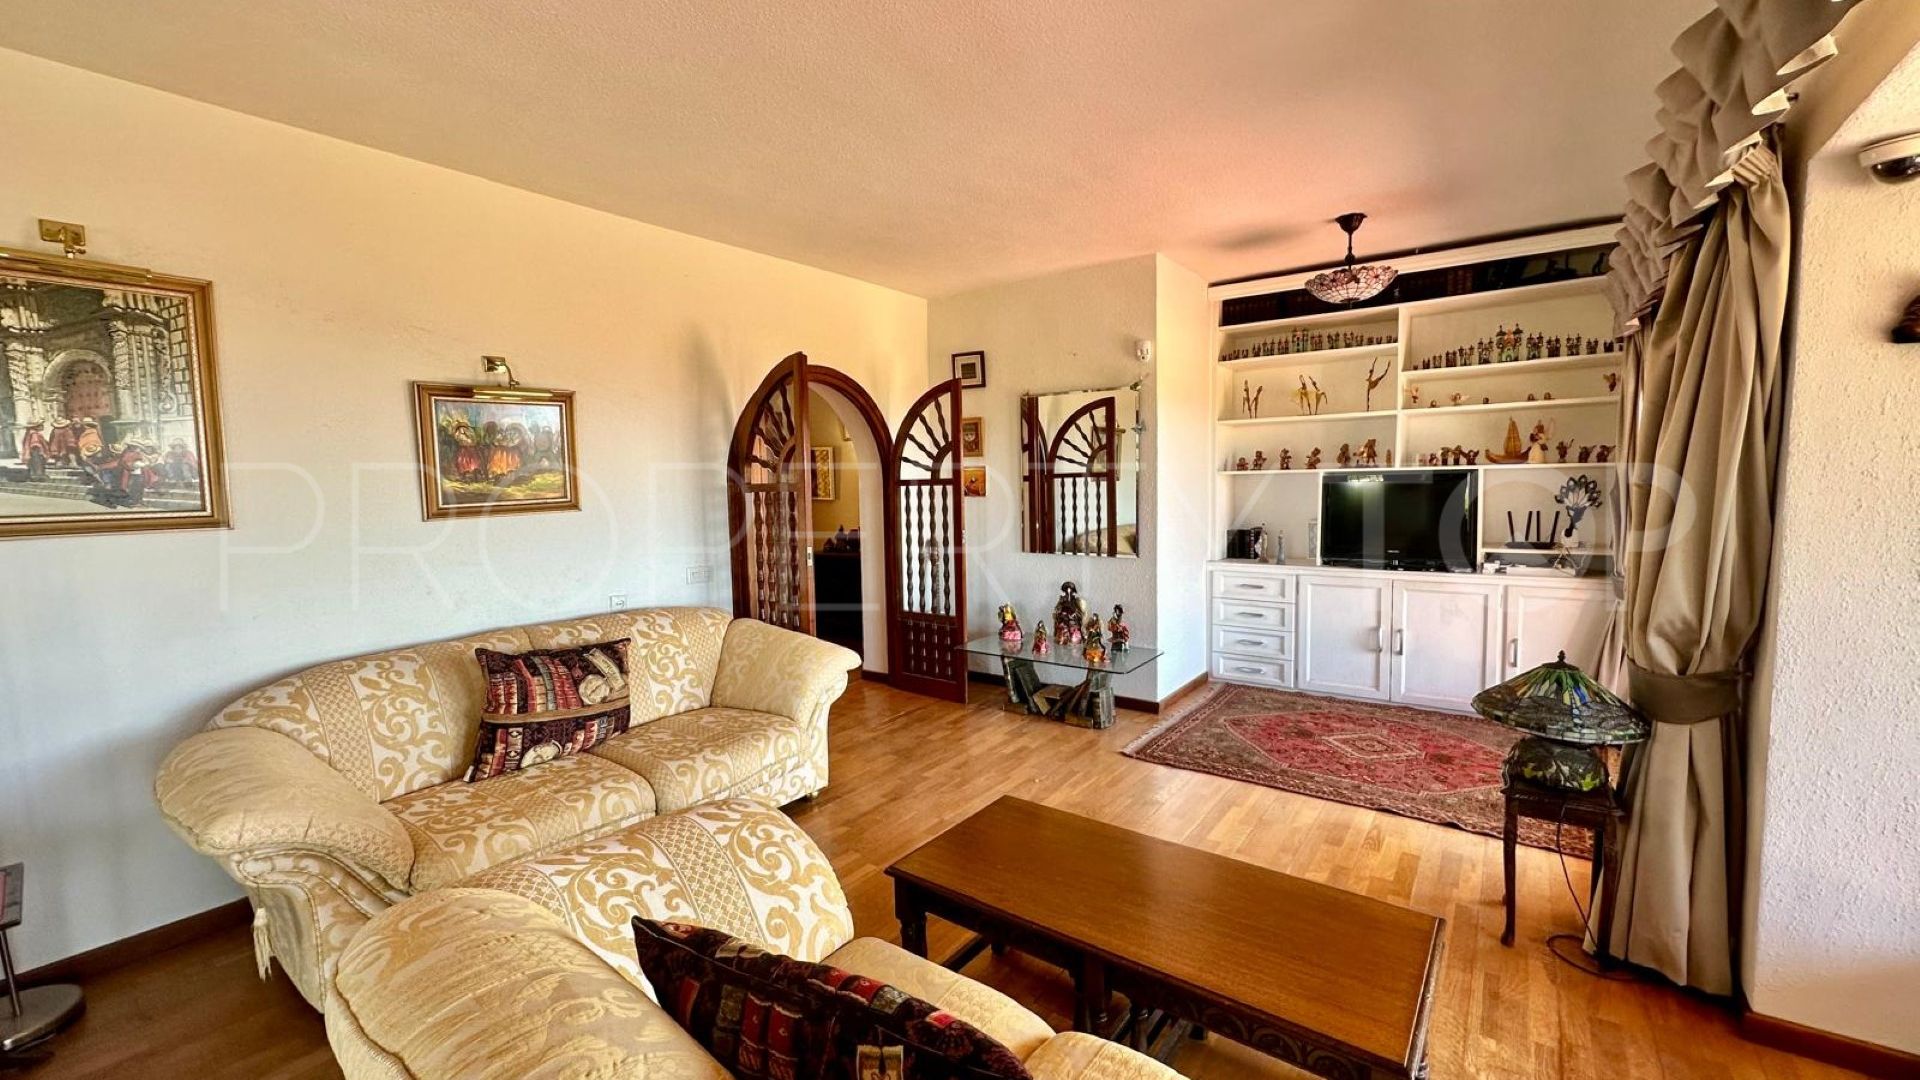 4 bedrooms villa in El Rosario for sale